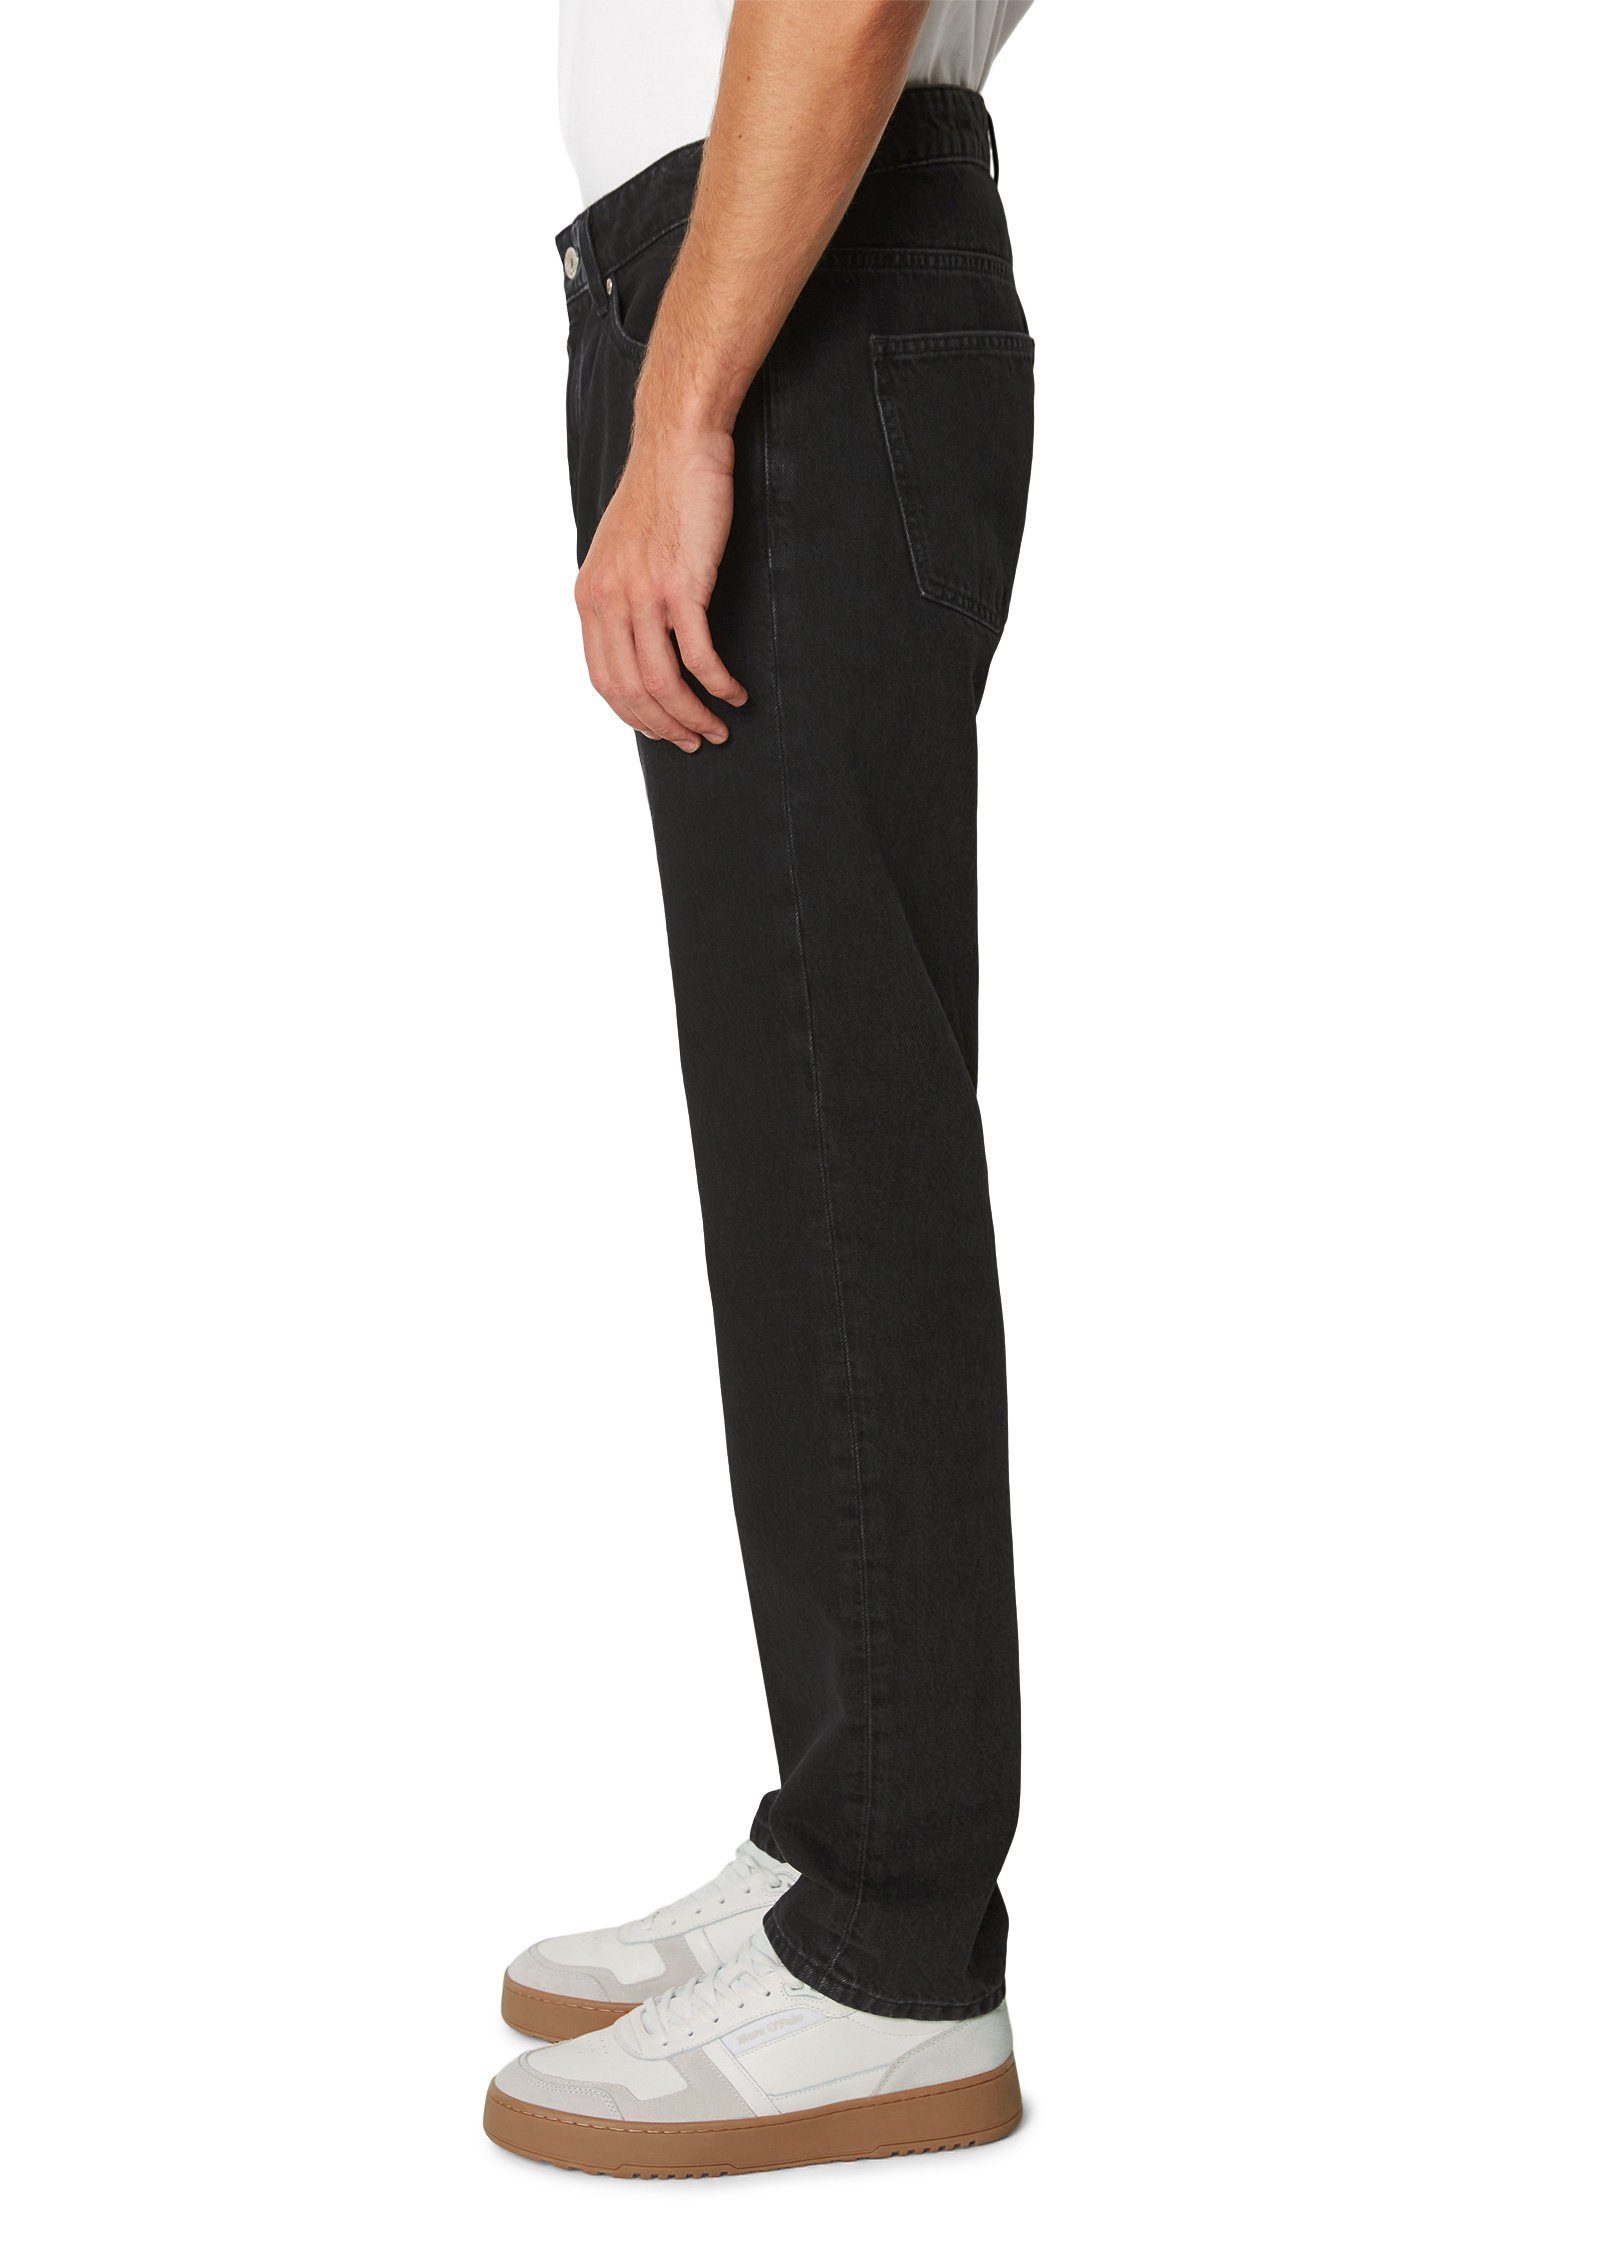 Marc O'Polo DENIM 5-Pocket-Jeans Bio-Baumwolle aus reiner